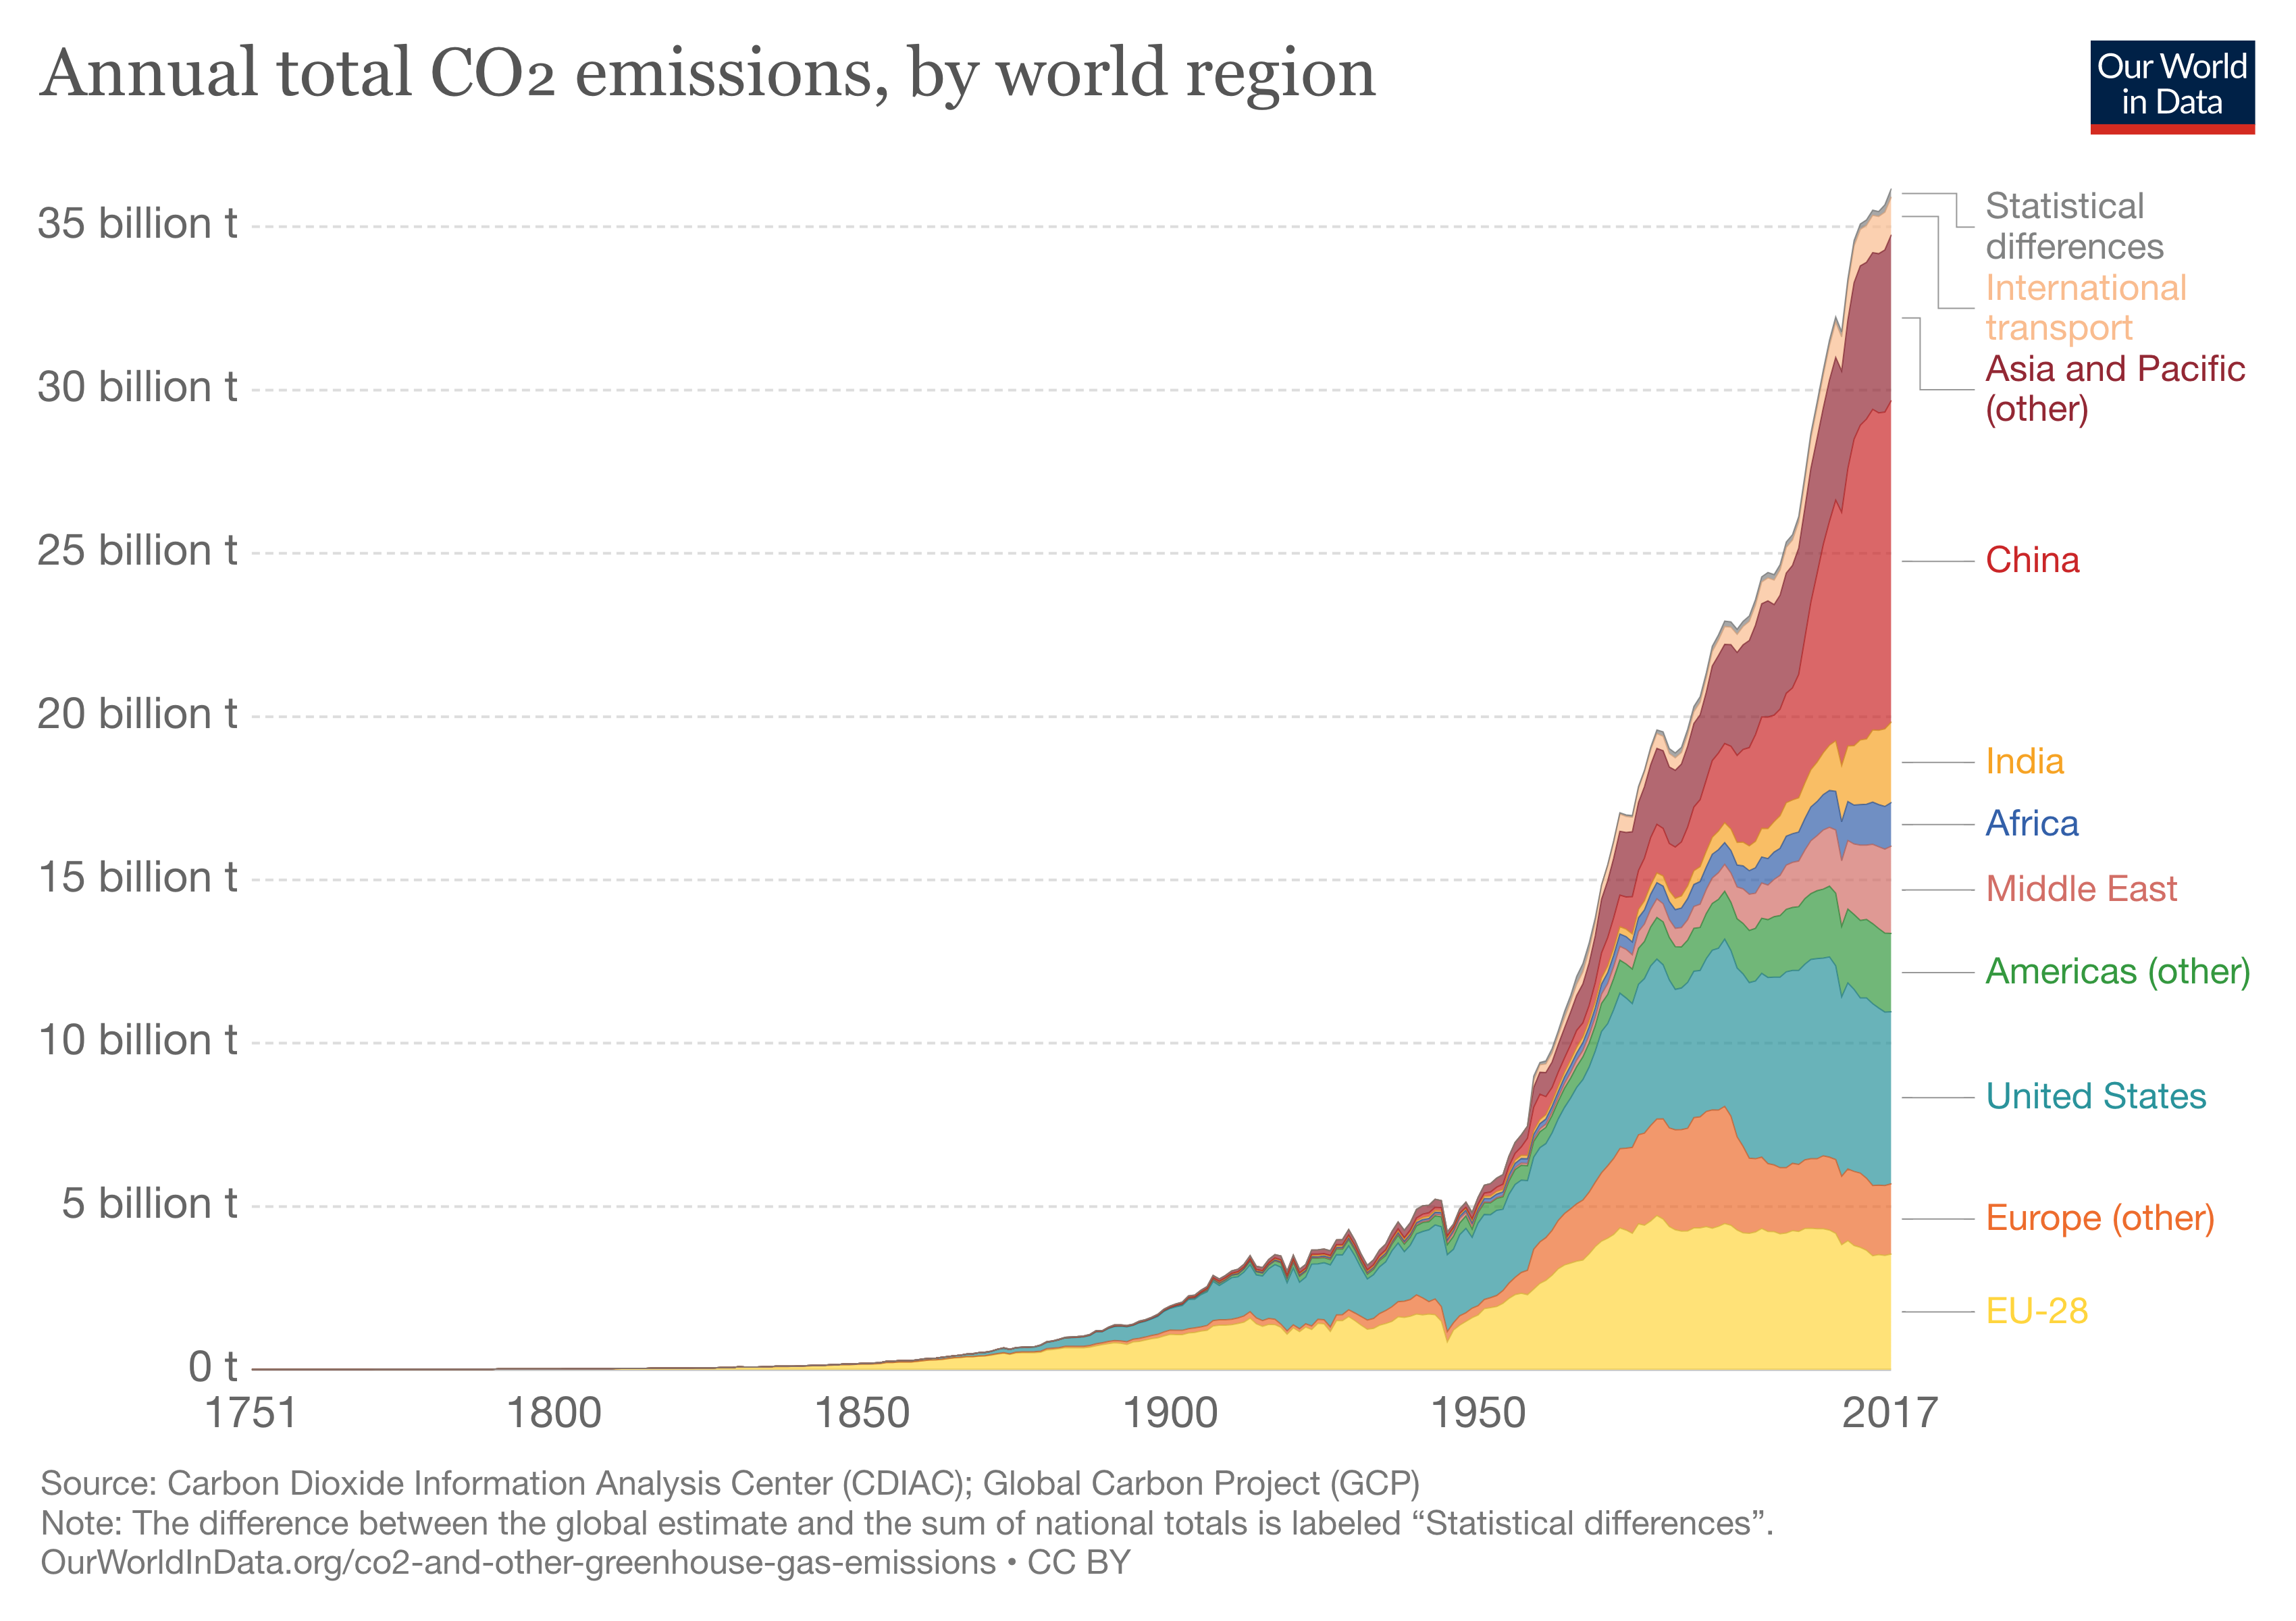 近年美國與歐洲地區的碳排放量呈下降趨勢，但中國、印度等發展中國家的碳排量卻迅速增加，除了境內運輸、建設、製造需求外，還有部分是「碳洩漏」的結果。